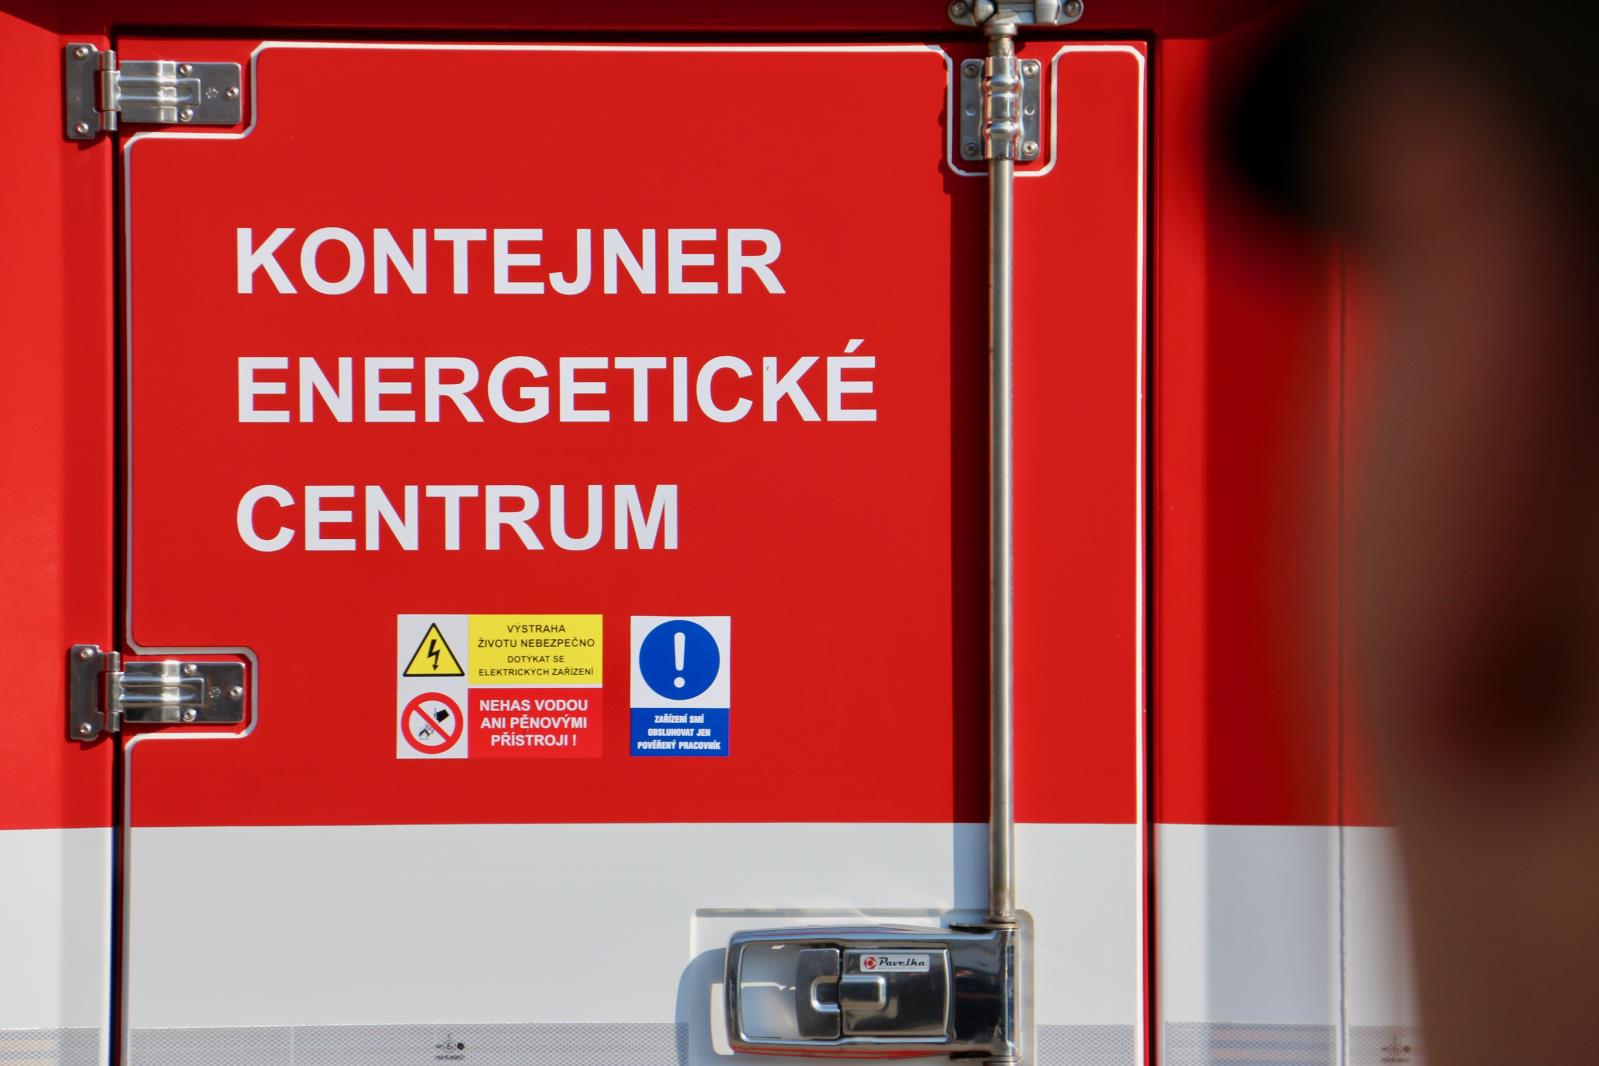 predani energo centrum kontejneru - Olomouc